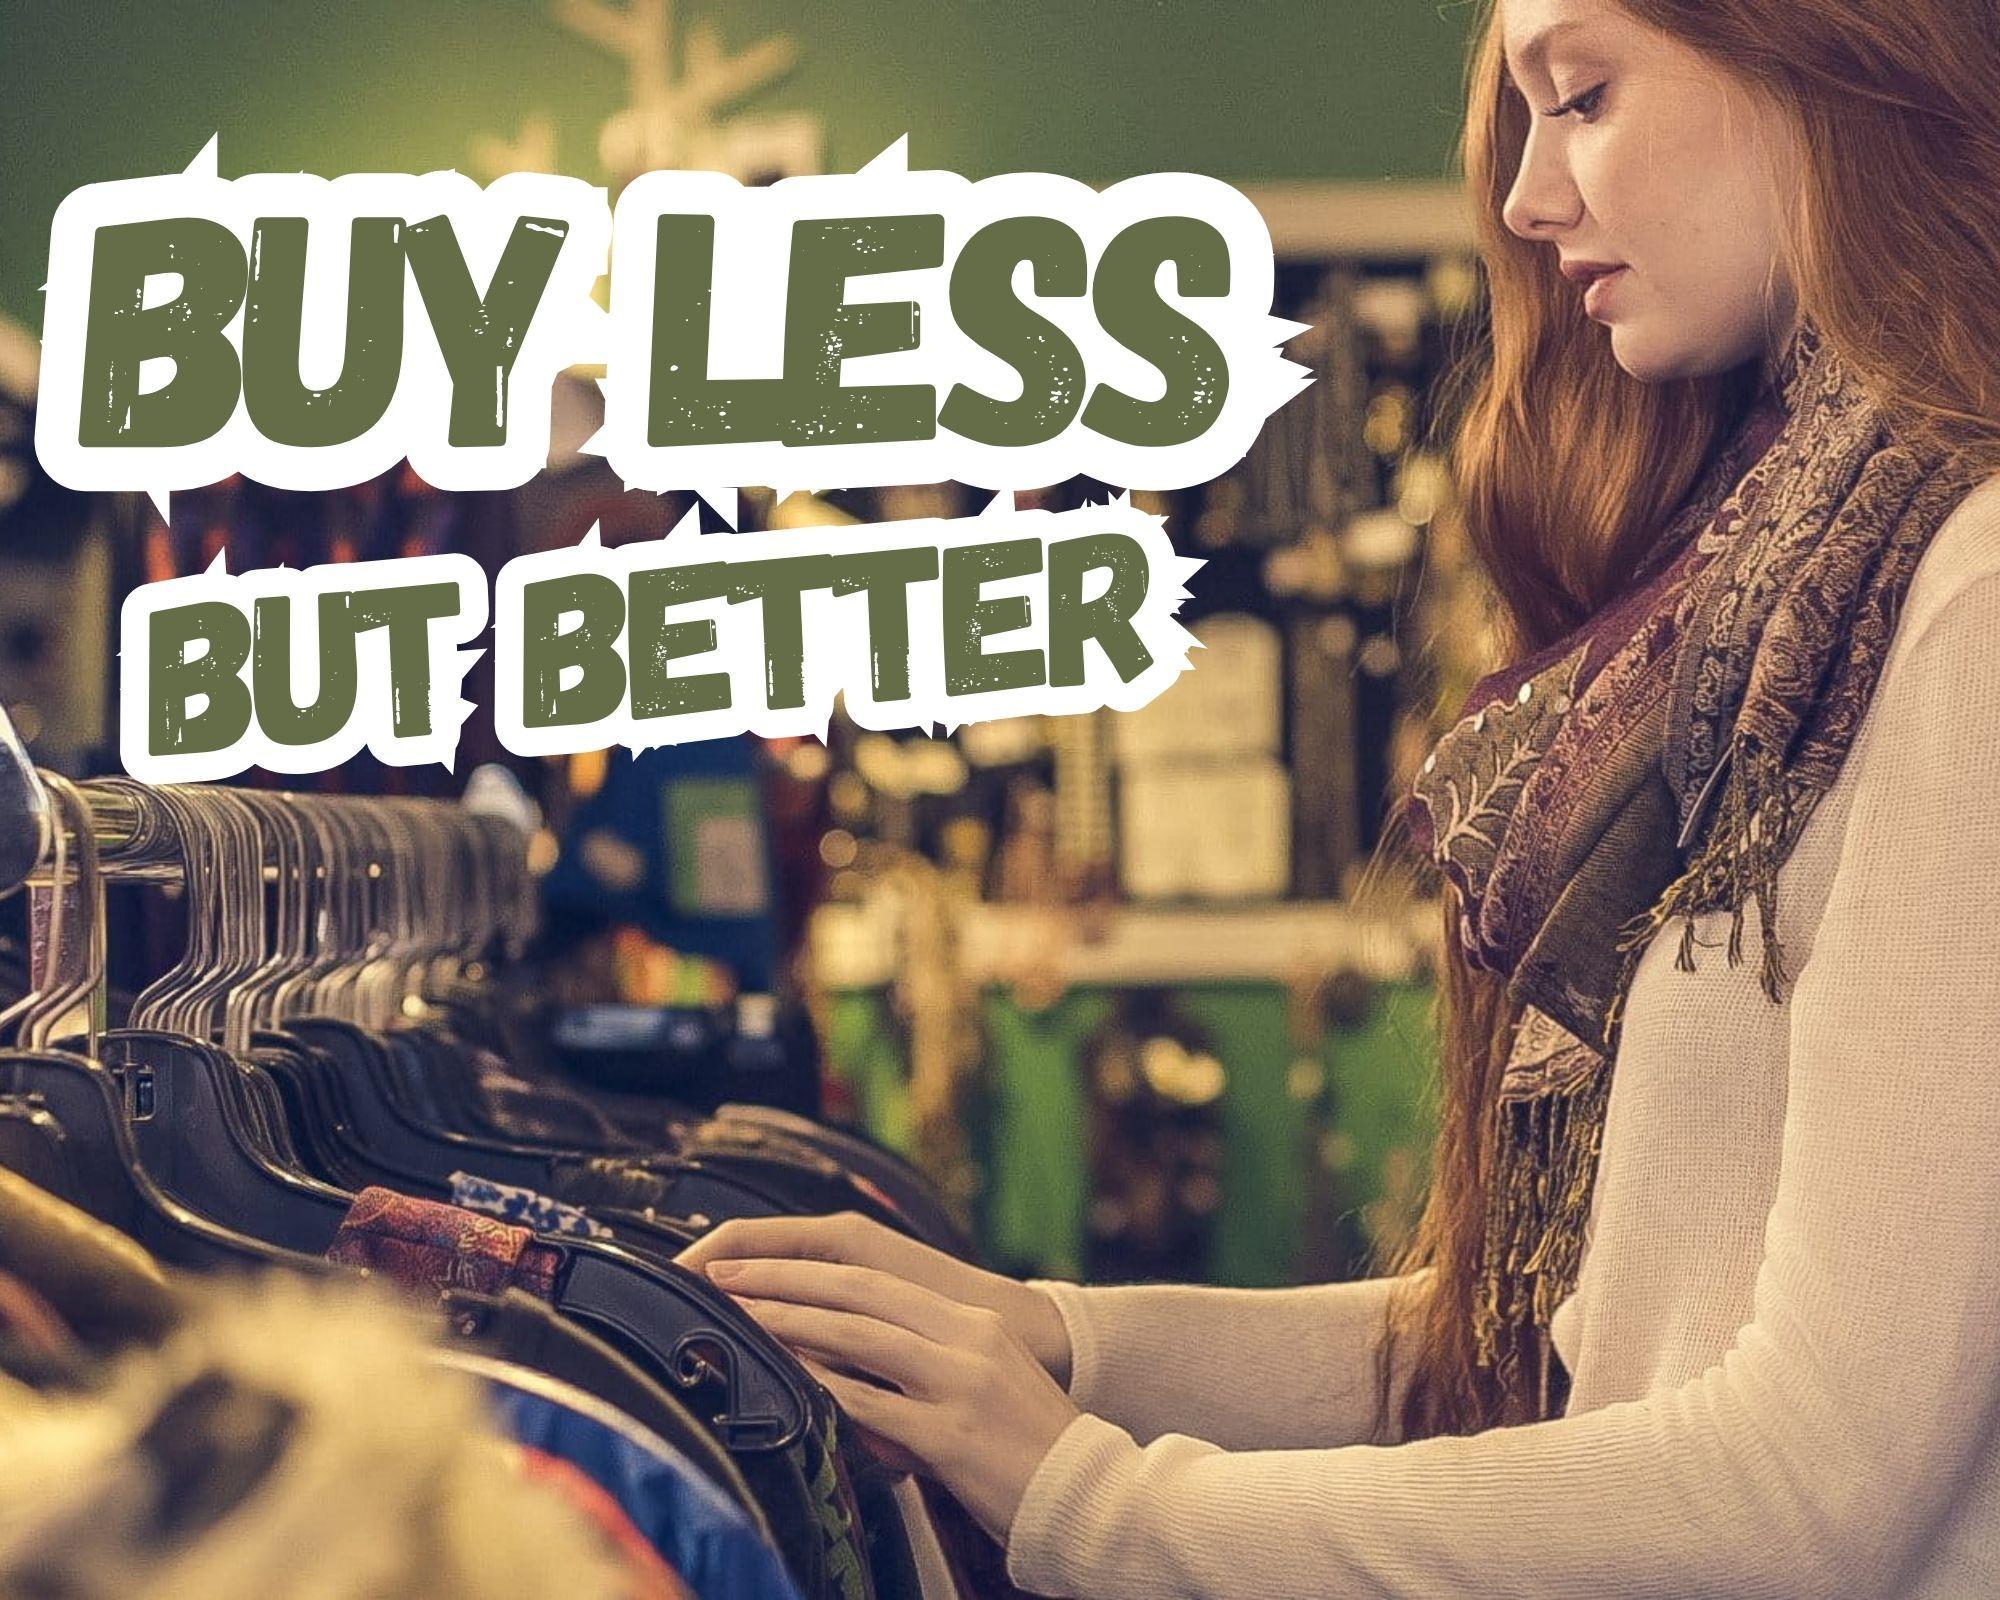 buy less but better